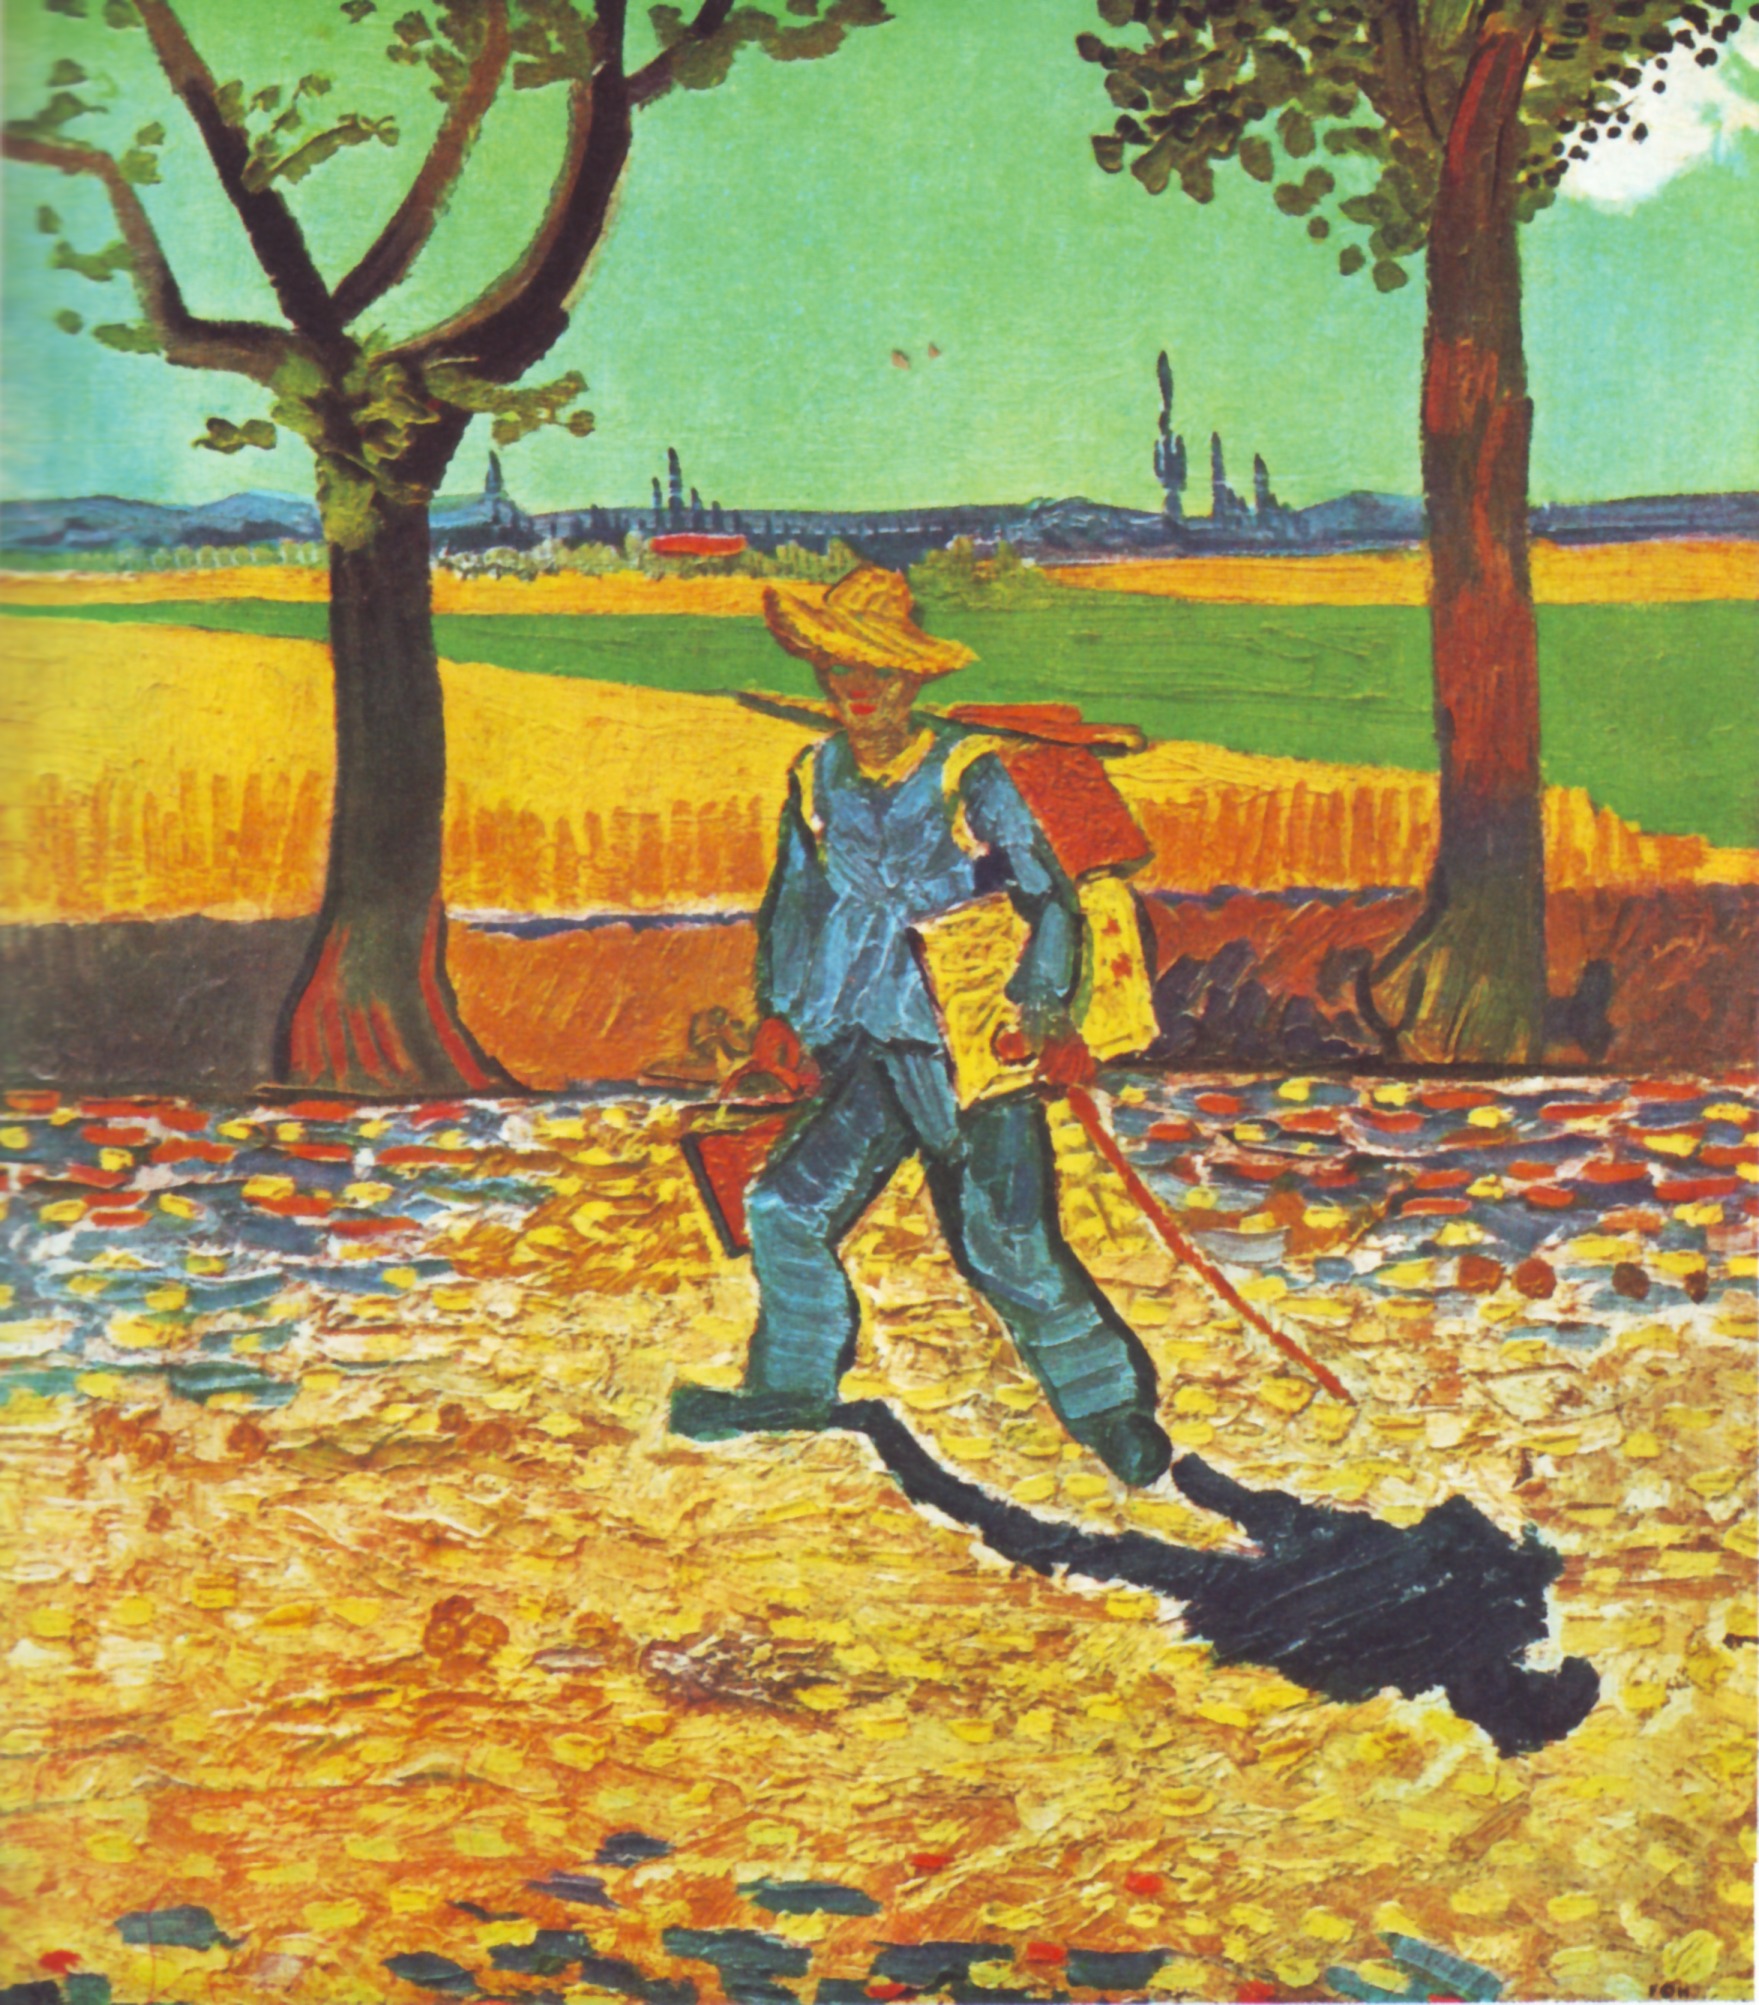 Le Peintre sur la route de Tarascon by Vincent van Gogh - 1888 - 48 × 44 cm Perdue par le feu en 1945